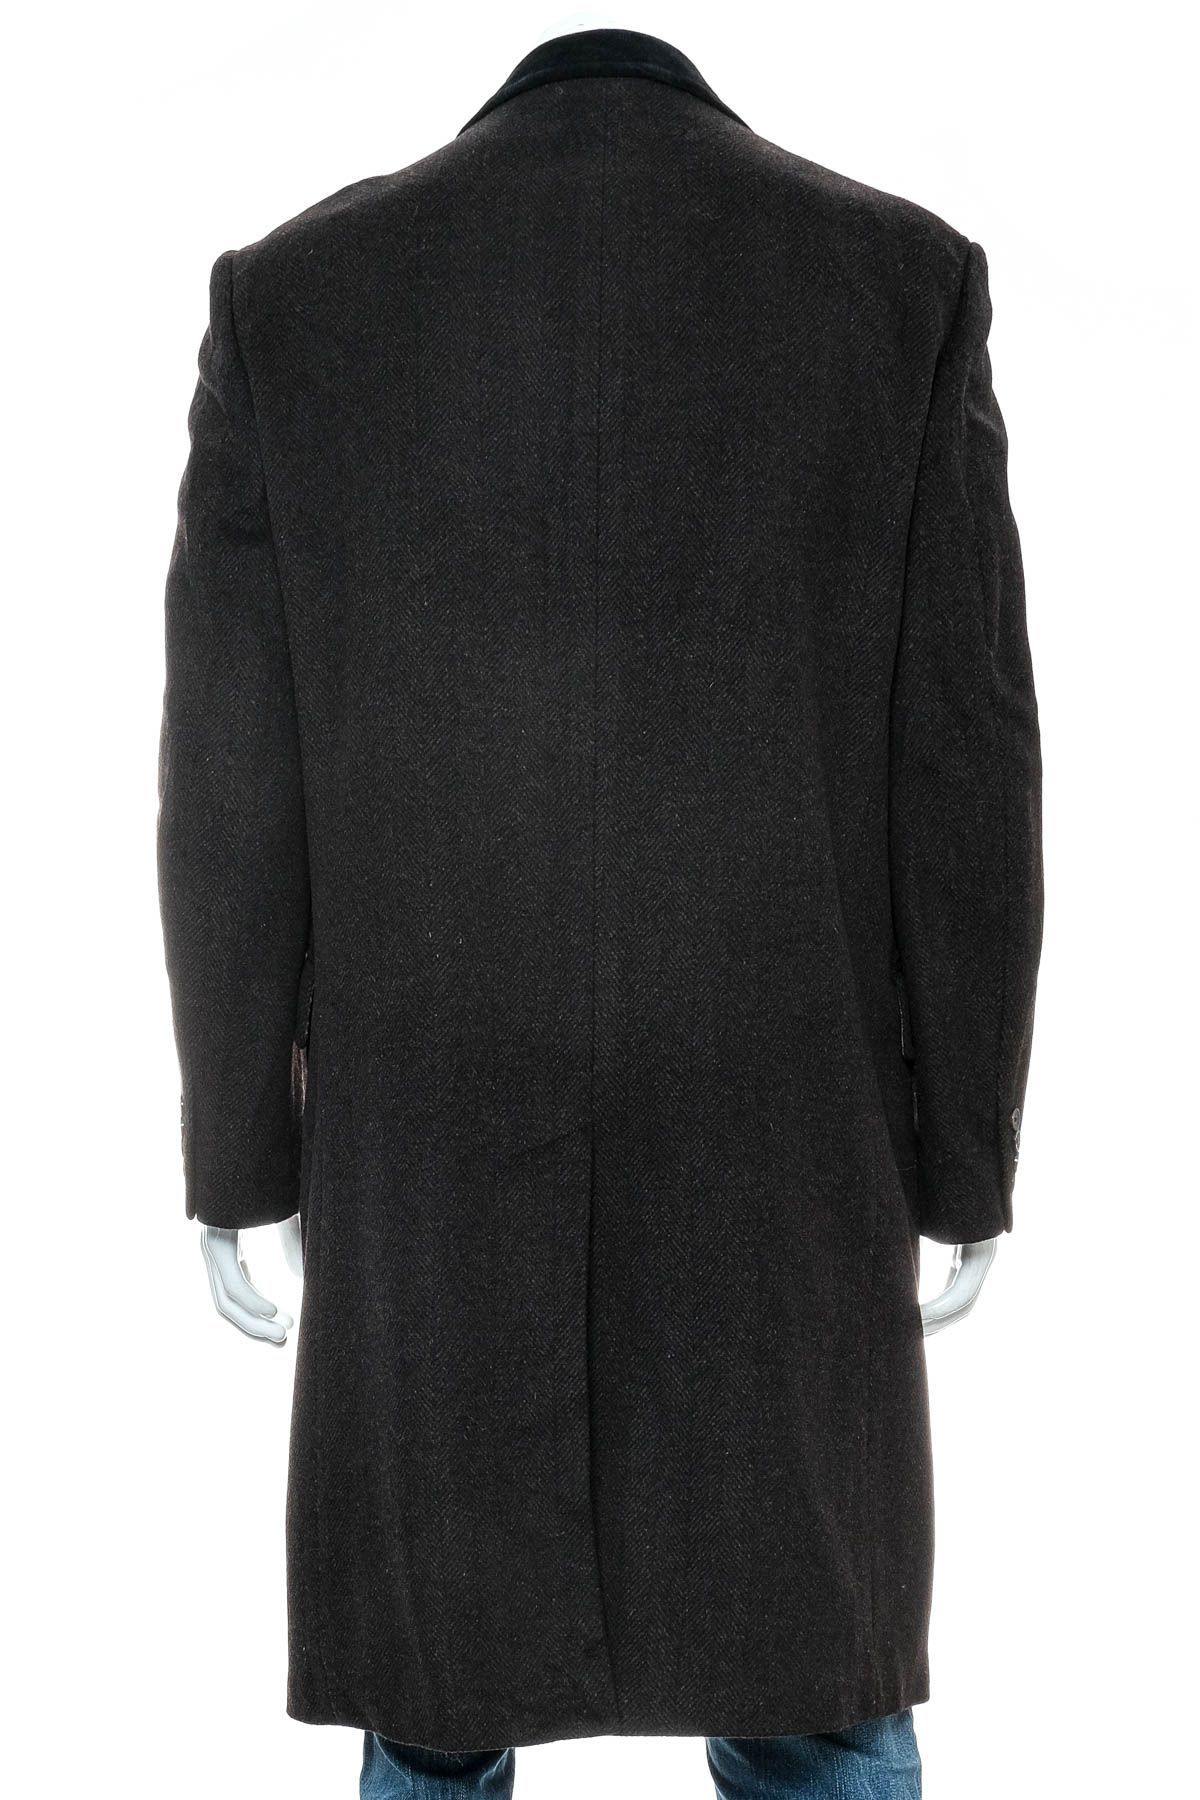 Ανδρικό παλτό - Black Brown - 1